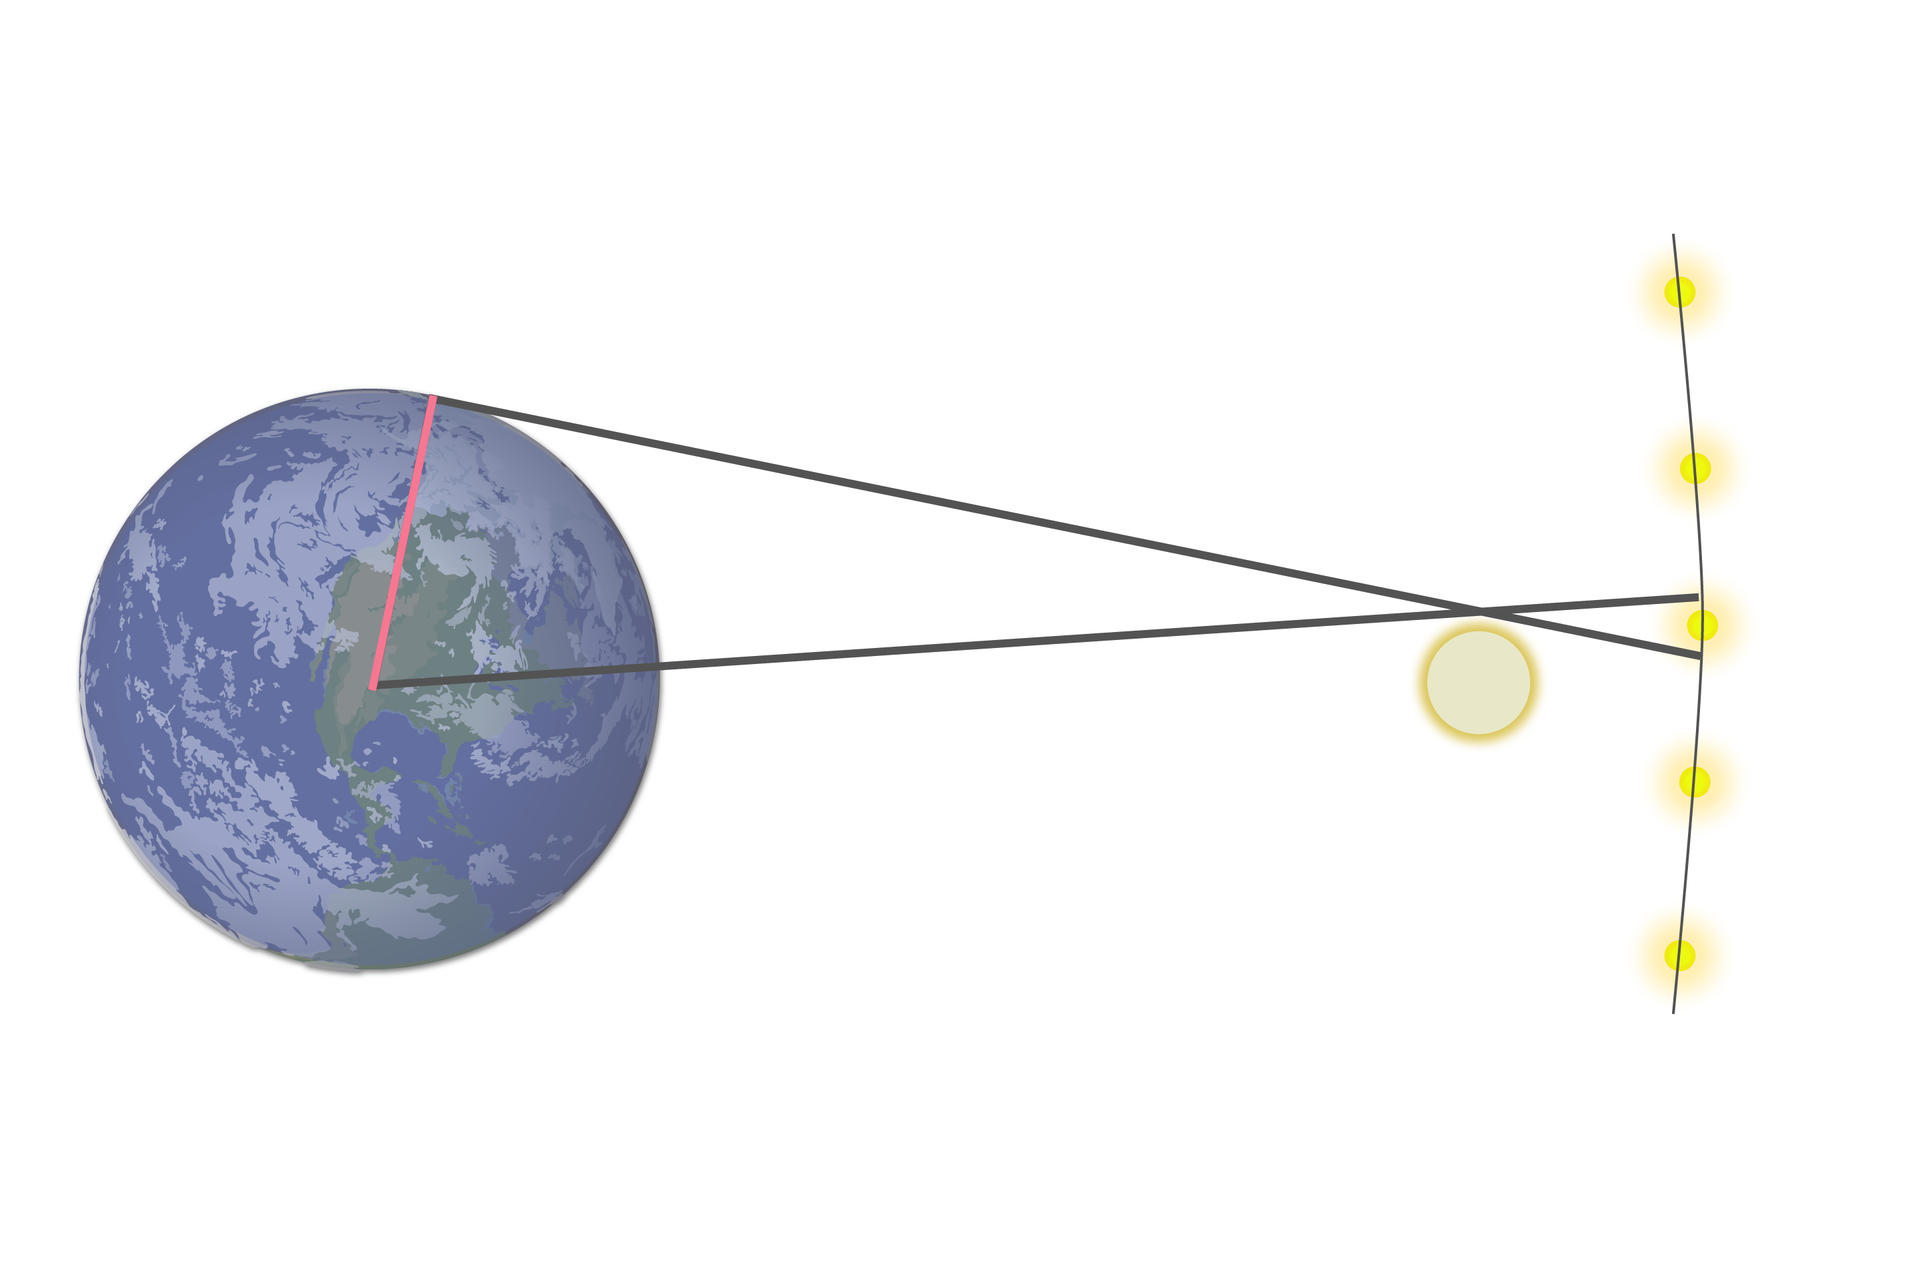 Grafika ilustruje paralaksę geocentryczną. Tło białe. Z lewej strony znajduje się duża grafika kuli ziemskiej. Po prawej stronie narysowany jest Księżyc, a za nim, tuż przy prawej krawędzi, 5 niewielkich kul symbolizujących gwiazdy, Są one ułożone na fragmencie okręgu o średnicy dużej na tyle, że przypomina on linie prostą, od góry do dołu w równych odstępach. Ze środka Ziemi do punktu położonego na krawędzi Ziemi na godzinie pierwszej zaznaczono promień planety. Od środka Ziemi poprowadzony jest odcinek styczny do górnej krawędzi Księżyca, jego koniec znajduje się tuż ponad jedną z gwiazd przy prawej krawędzi. Z punktu na krawędzi Ziemi, do którego poprowadzono promień, narysowano odcinek styczny zarówno do krawędzi Ziemi w tym punkcie, jak i do górnej krawędzi Księżyca. Koniec tego odcinek znajduje się tuż poniżej tej samej gwiazdy. Grafika ta pokazuje, że obserwator z jednego miejsca na powierzchni Ziemi zobaczy tę gwiazdę tuż przy krawędzi Księżyca, zaś obserwator w innym miejscu nie zobaczy tej gwiazdy, ponieważ z jego perspektywy będzie ona skryta za krawędzią Księżyca.